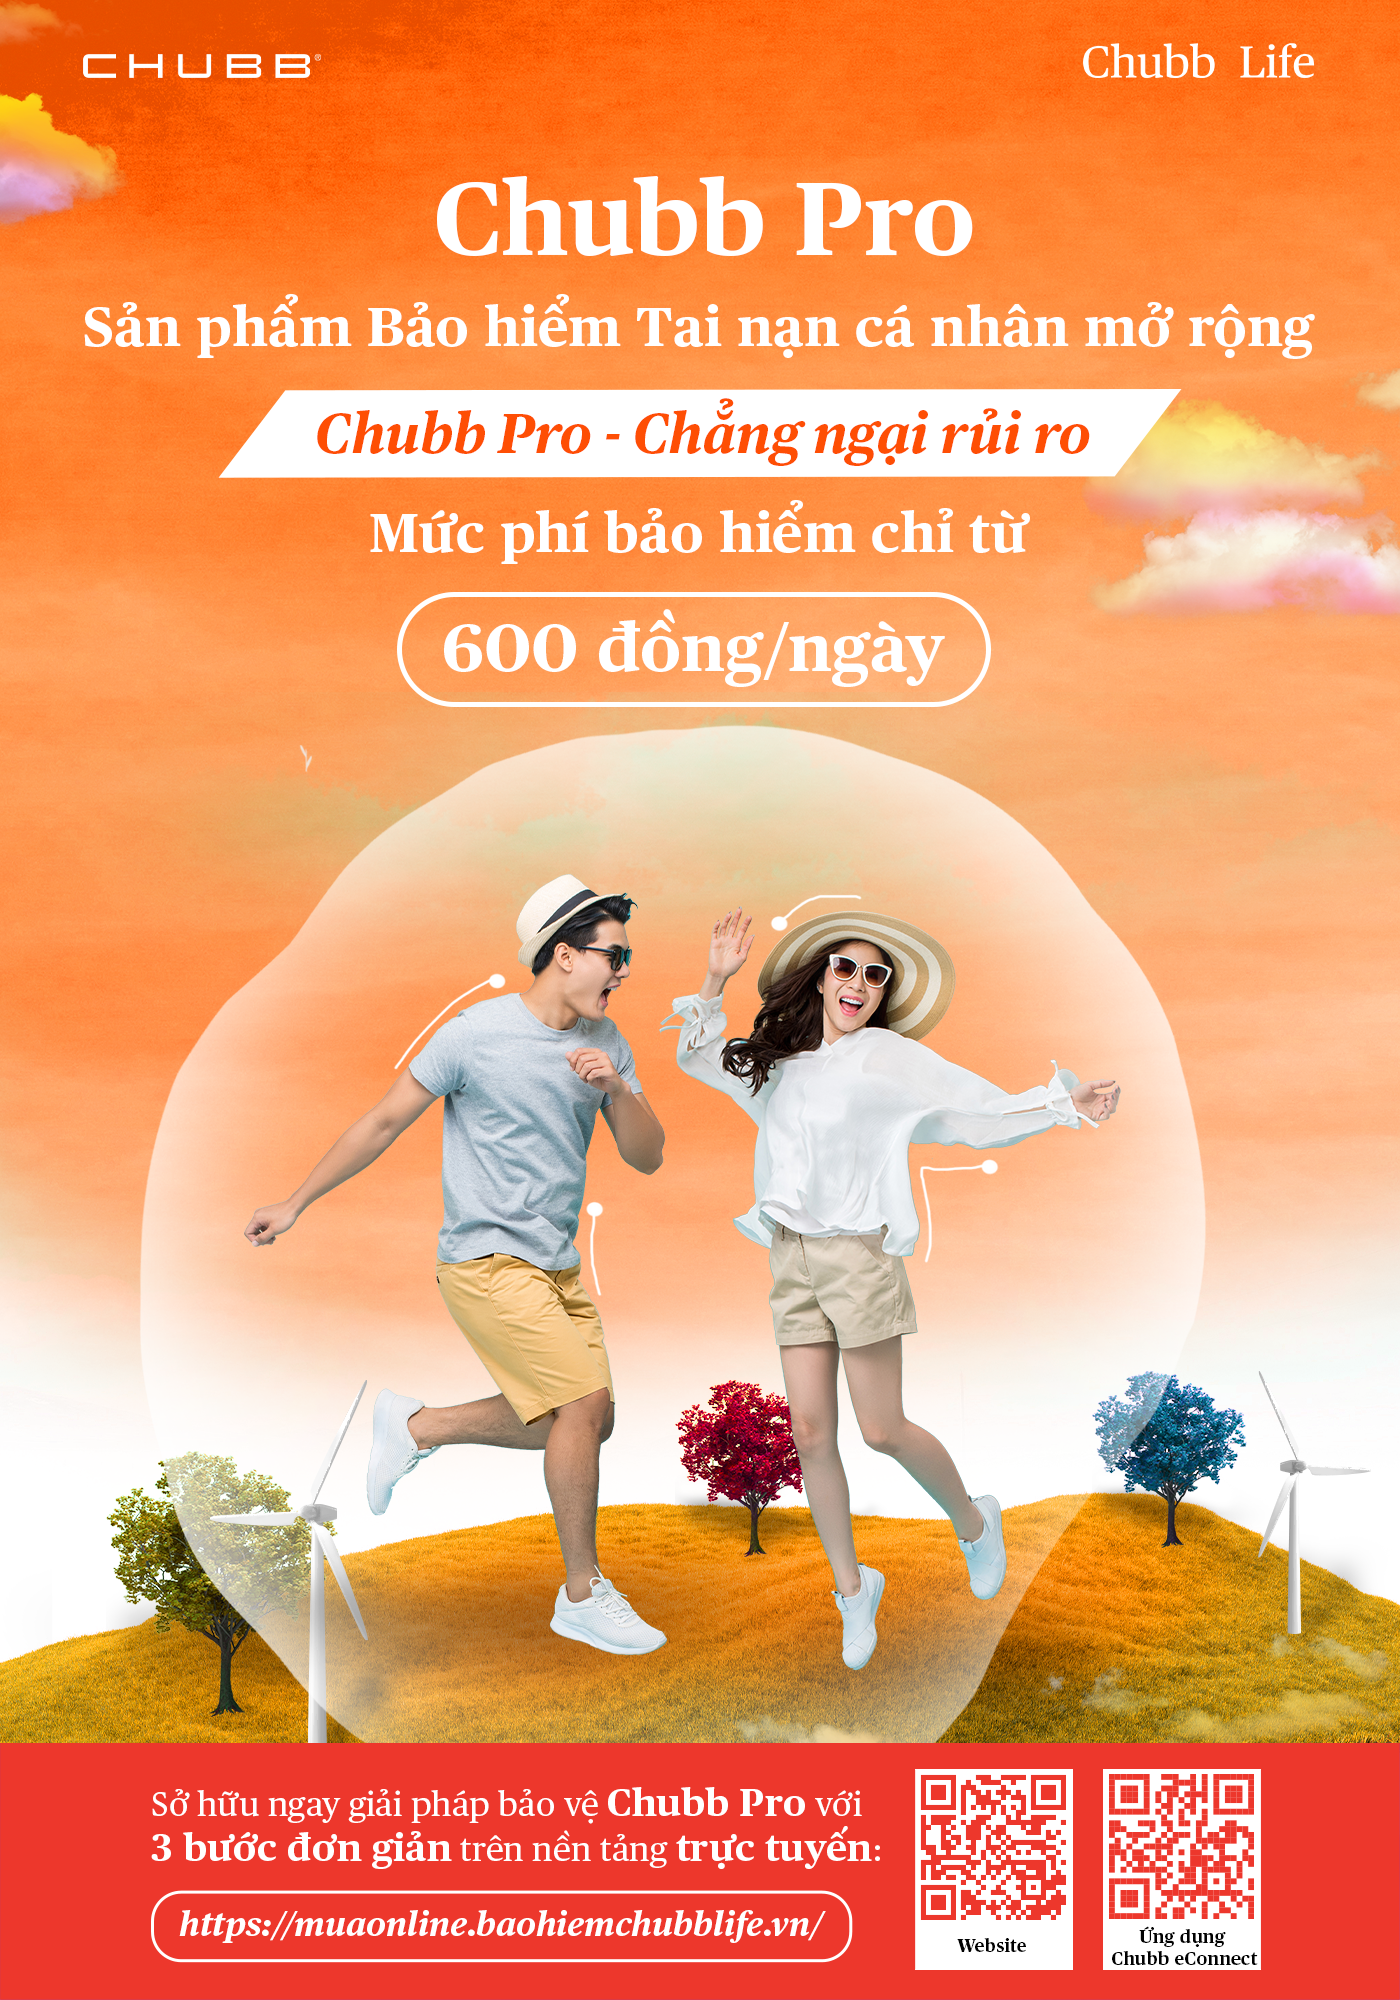 Chubb Life Việt Nam ra mắt 2 giải pháp bảo hiểm sức khỏe và tai nạn mới trên nền tảng trực tuyến - Ảnh 1.